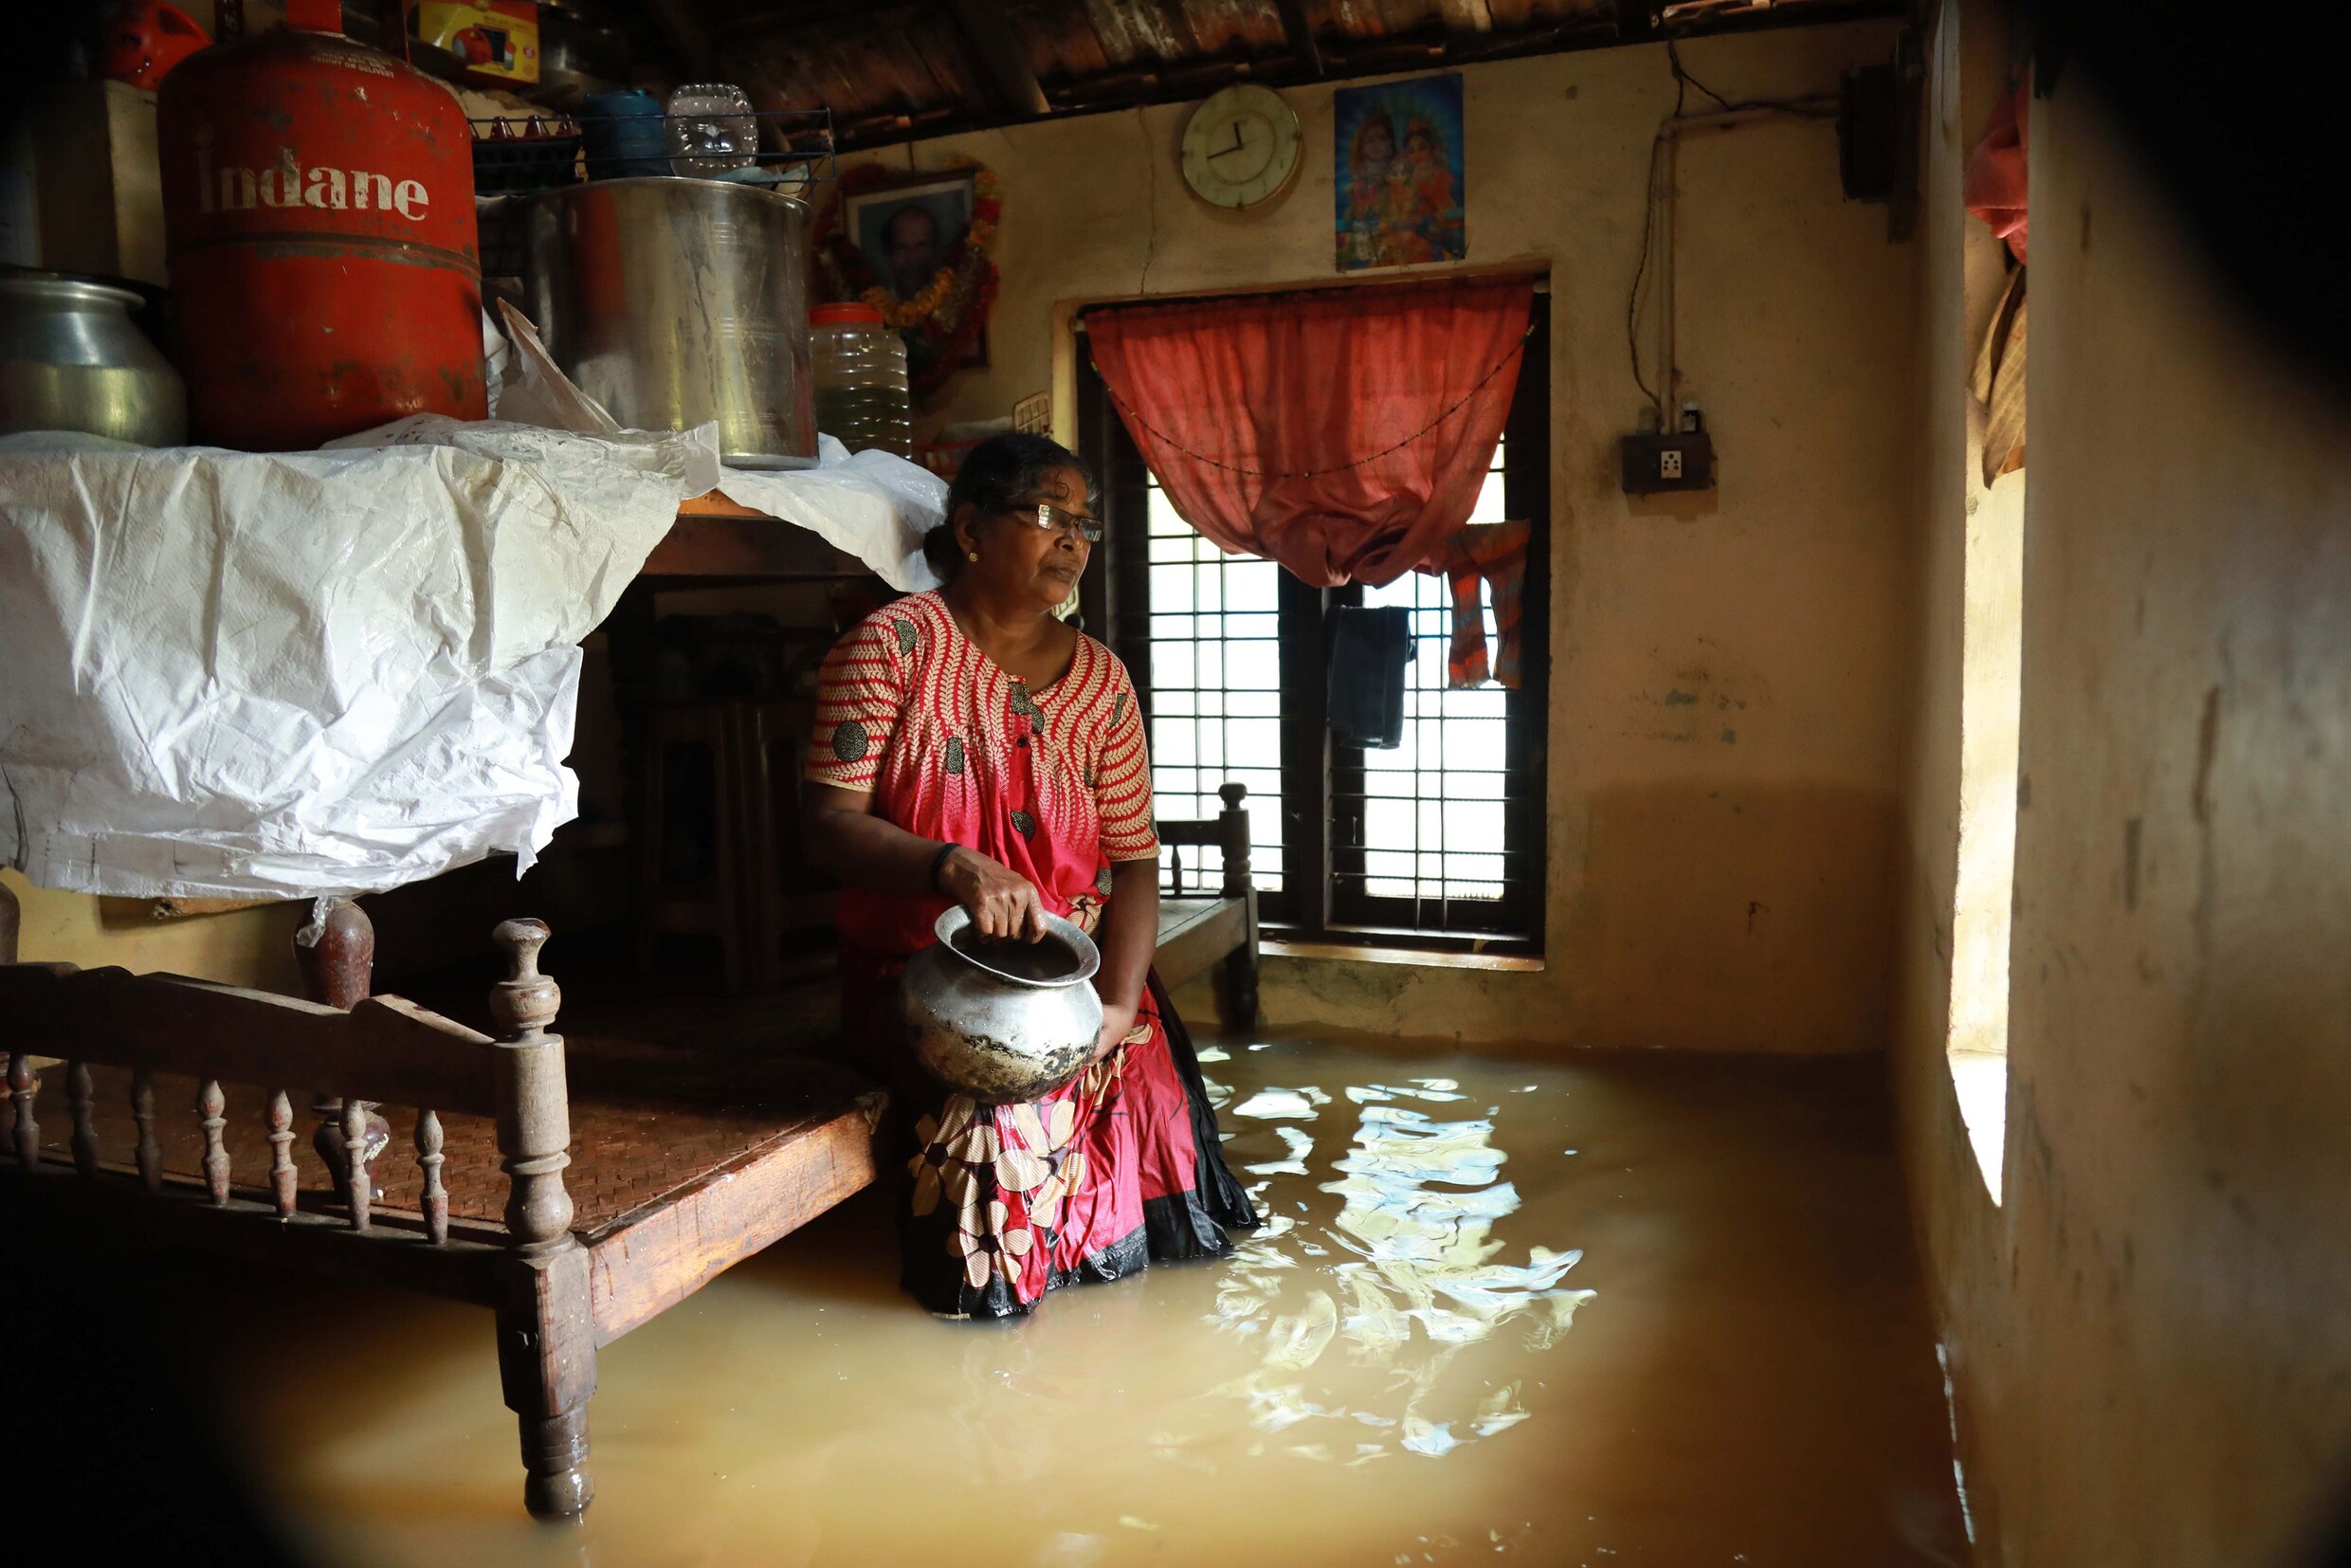 Dodentol na overstromingen in India loopt op tot 37, toeristische regio zwaarst getroffen